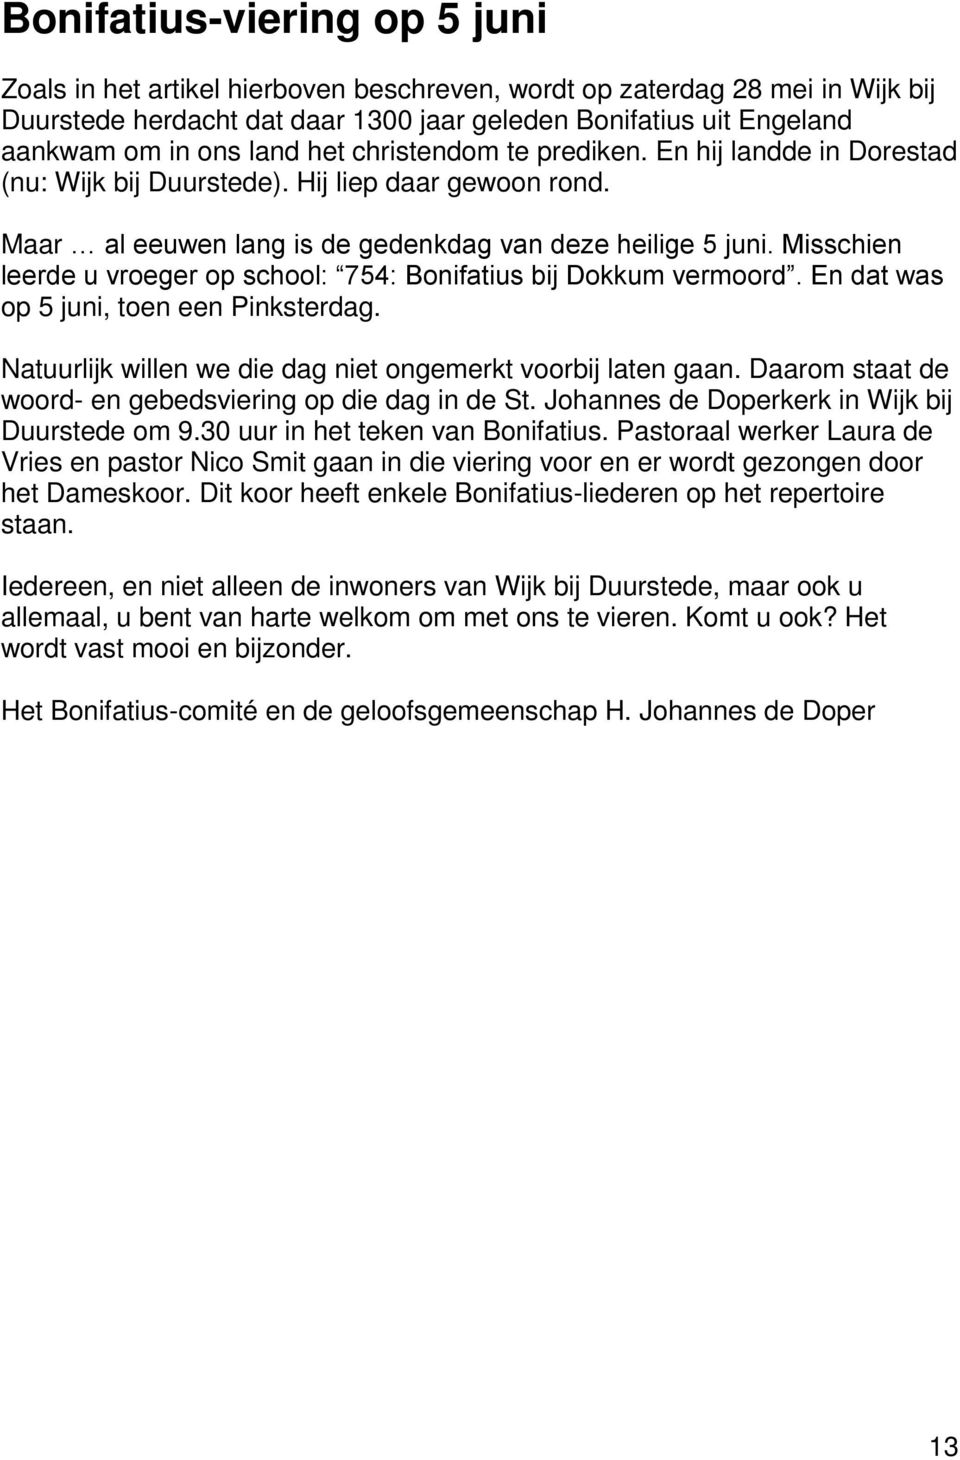 Misschien leerde u vroeger op school: 754: Bonifatius bij Dokkum vermoord. En dat was op 5 juni, toen een Pinksterdag. Natuurlijk willen we die dag niet ongemerkt voorbij laten gaan.